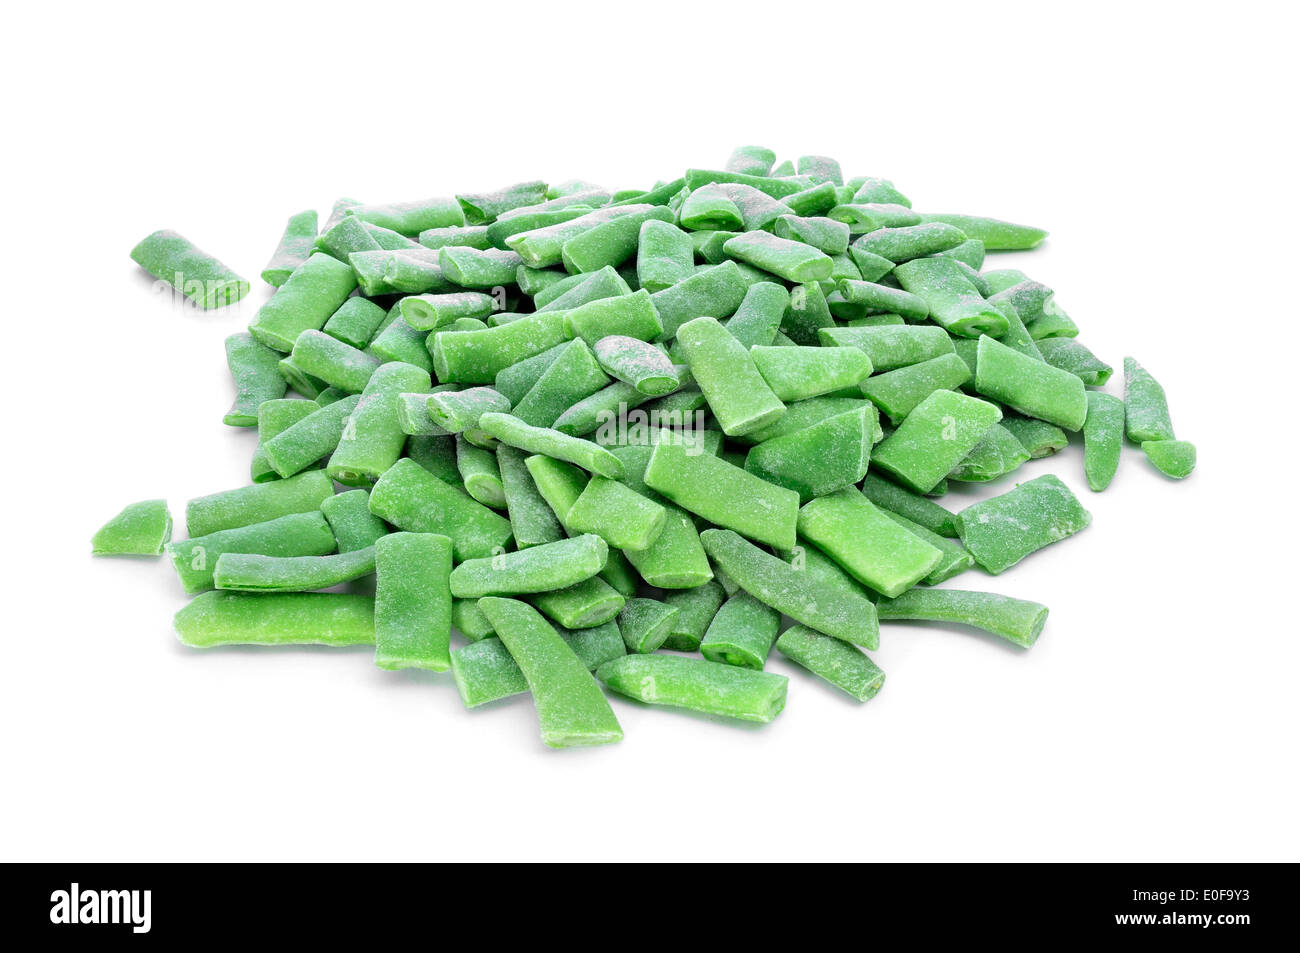 Un tas de haricots verts, hachés surgelés sur fond blanc Banque D'Images